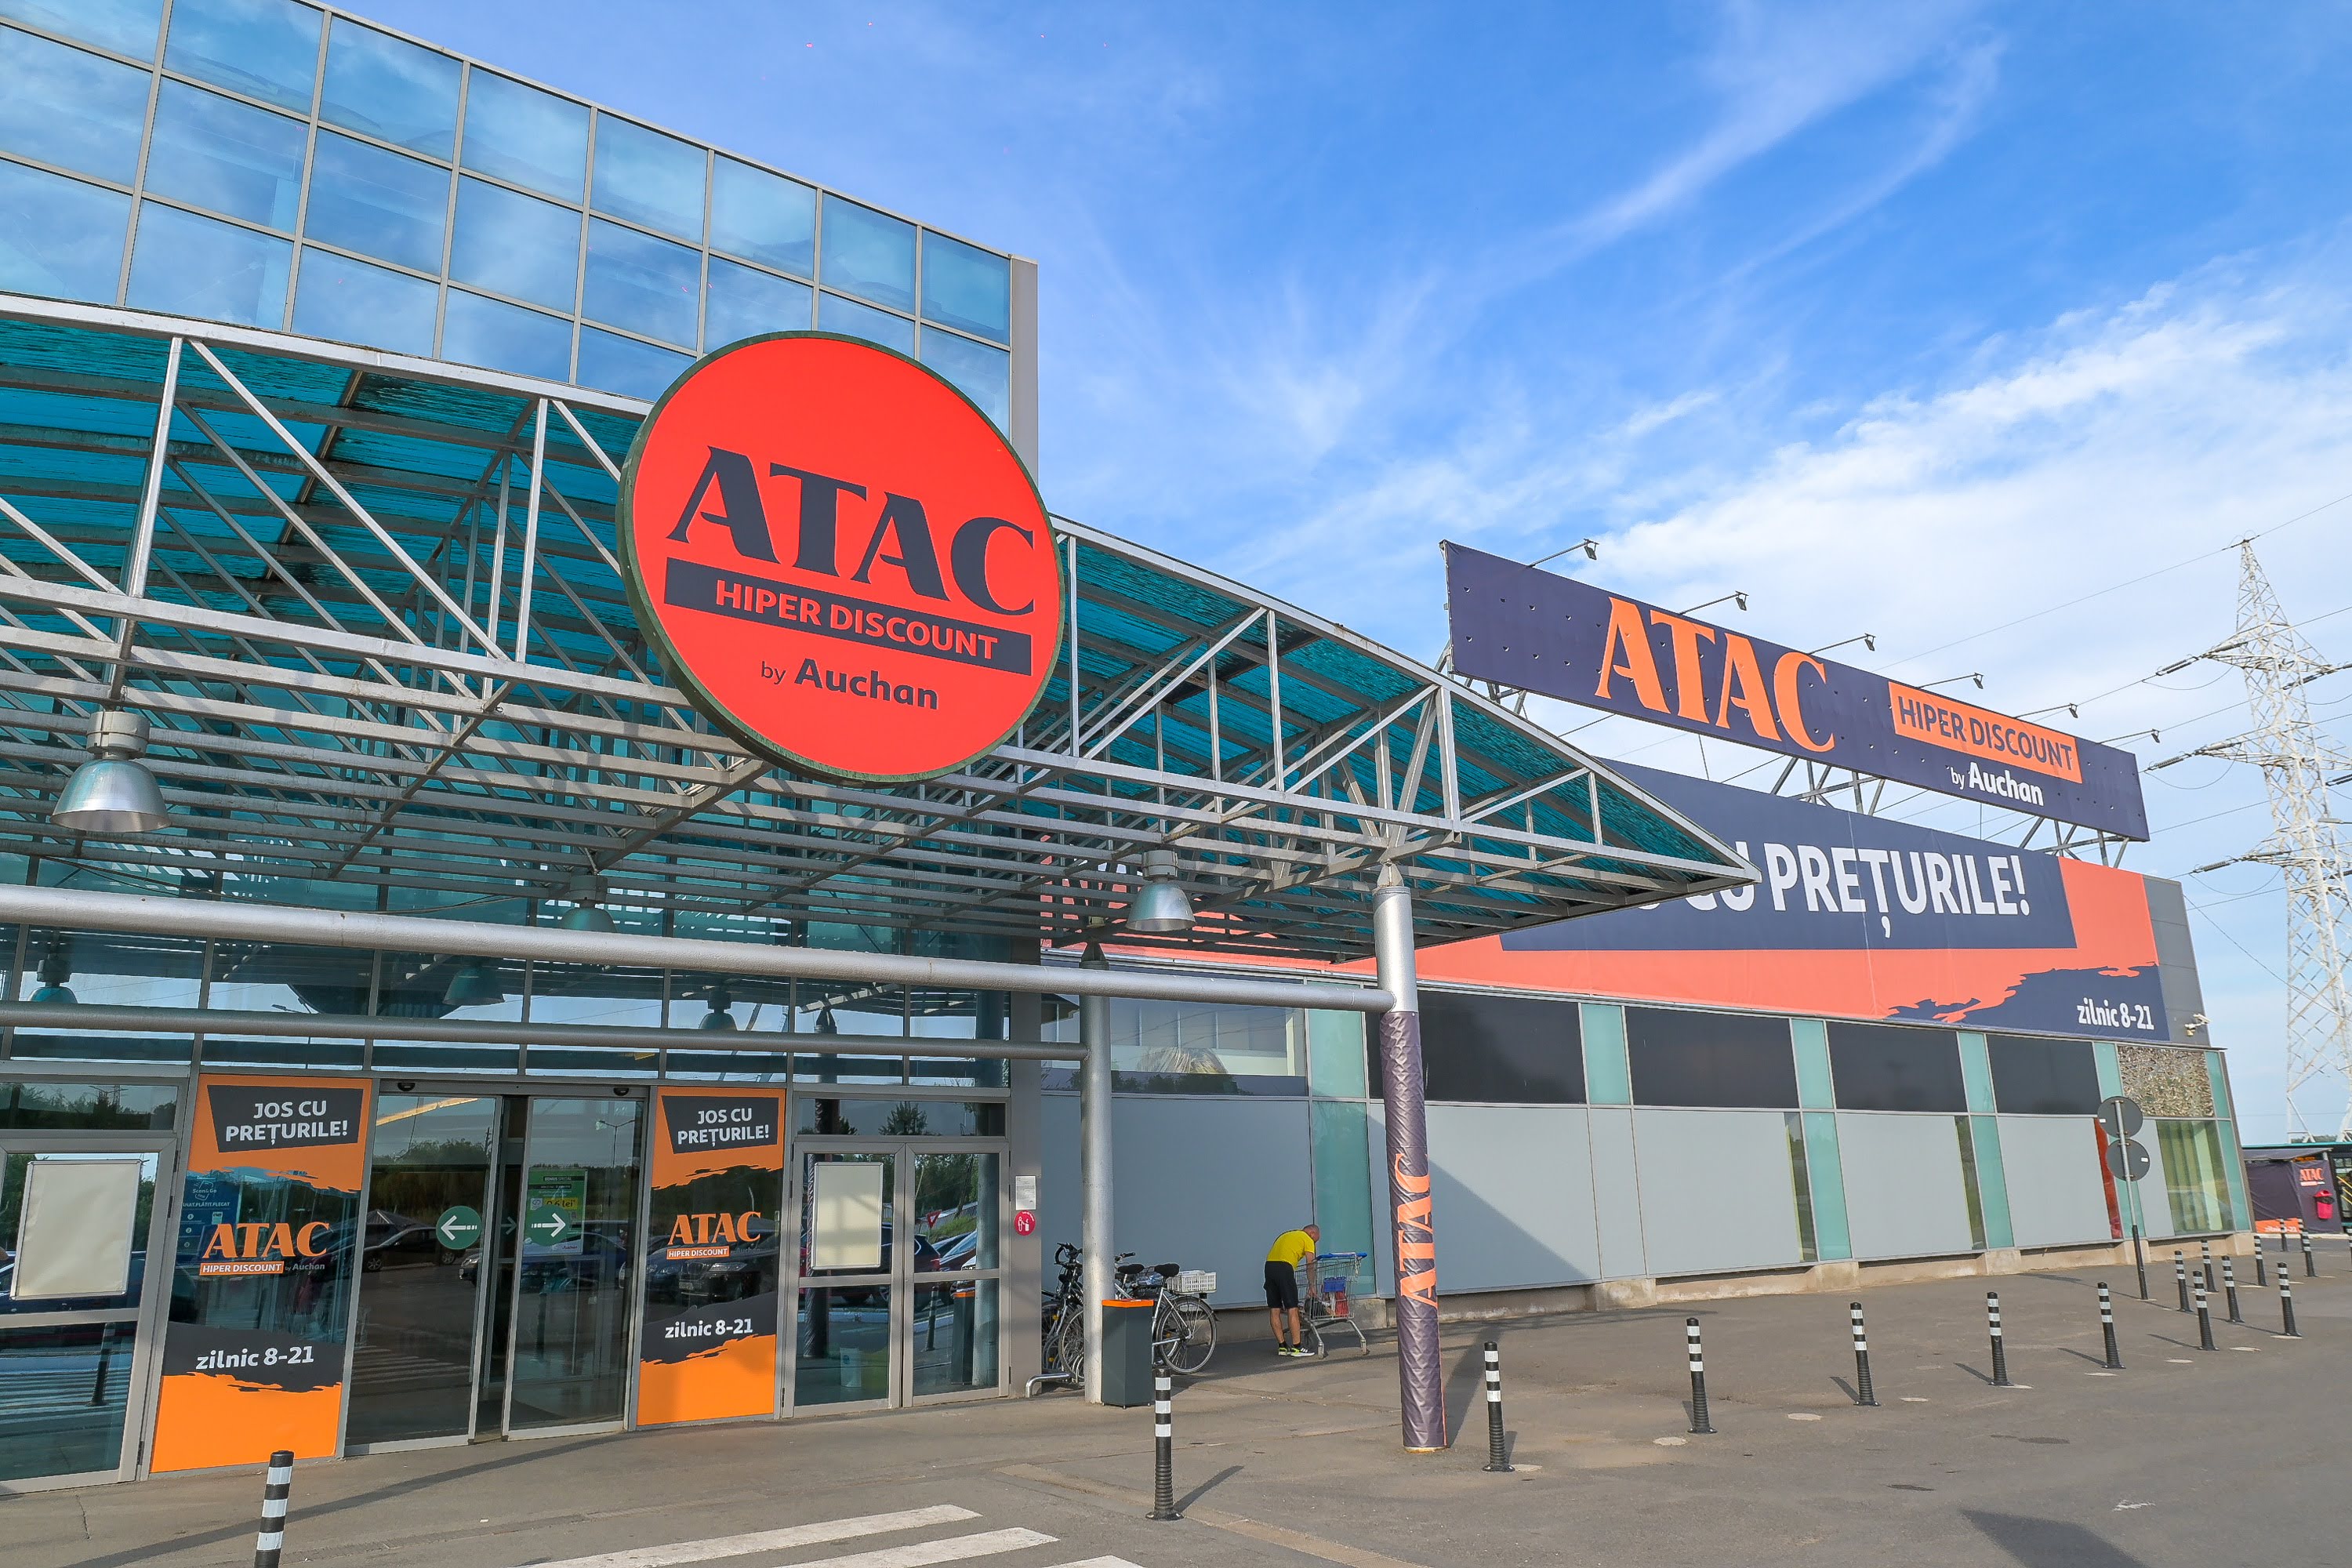 S-a deschis ATAC Hiper Discount by Auchan în Galați, formatul cu o strategie agresivă de prețuri mici zi de zi și reduceri în cascadă